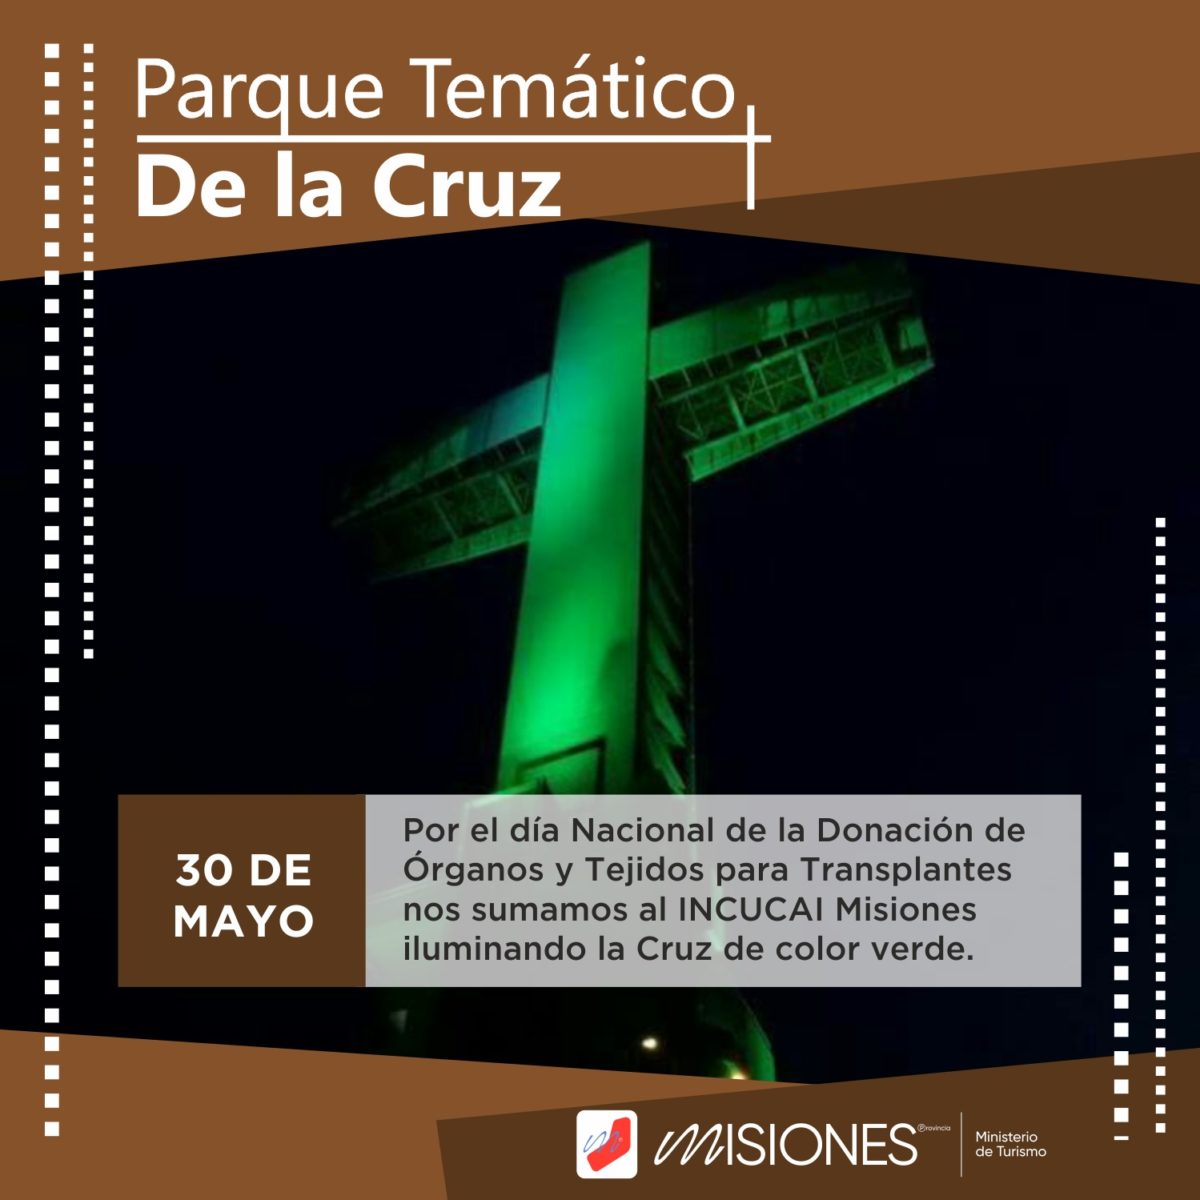 El Parque Temático La Cruz se ilumina de verde por el Día Nacional de la Donación de Órganos y Tejidos imagen-1